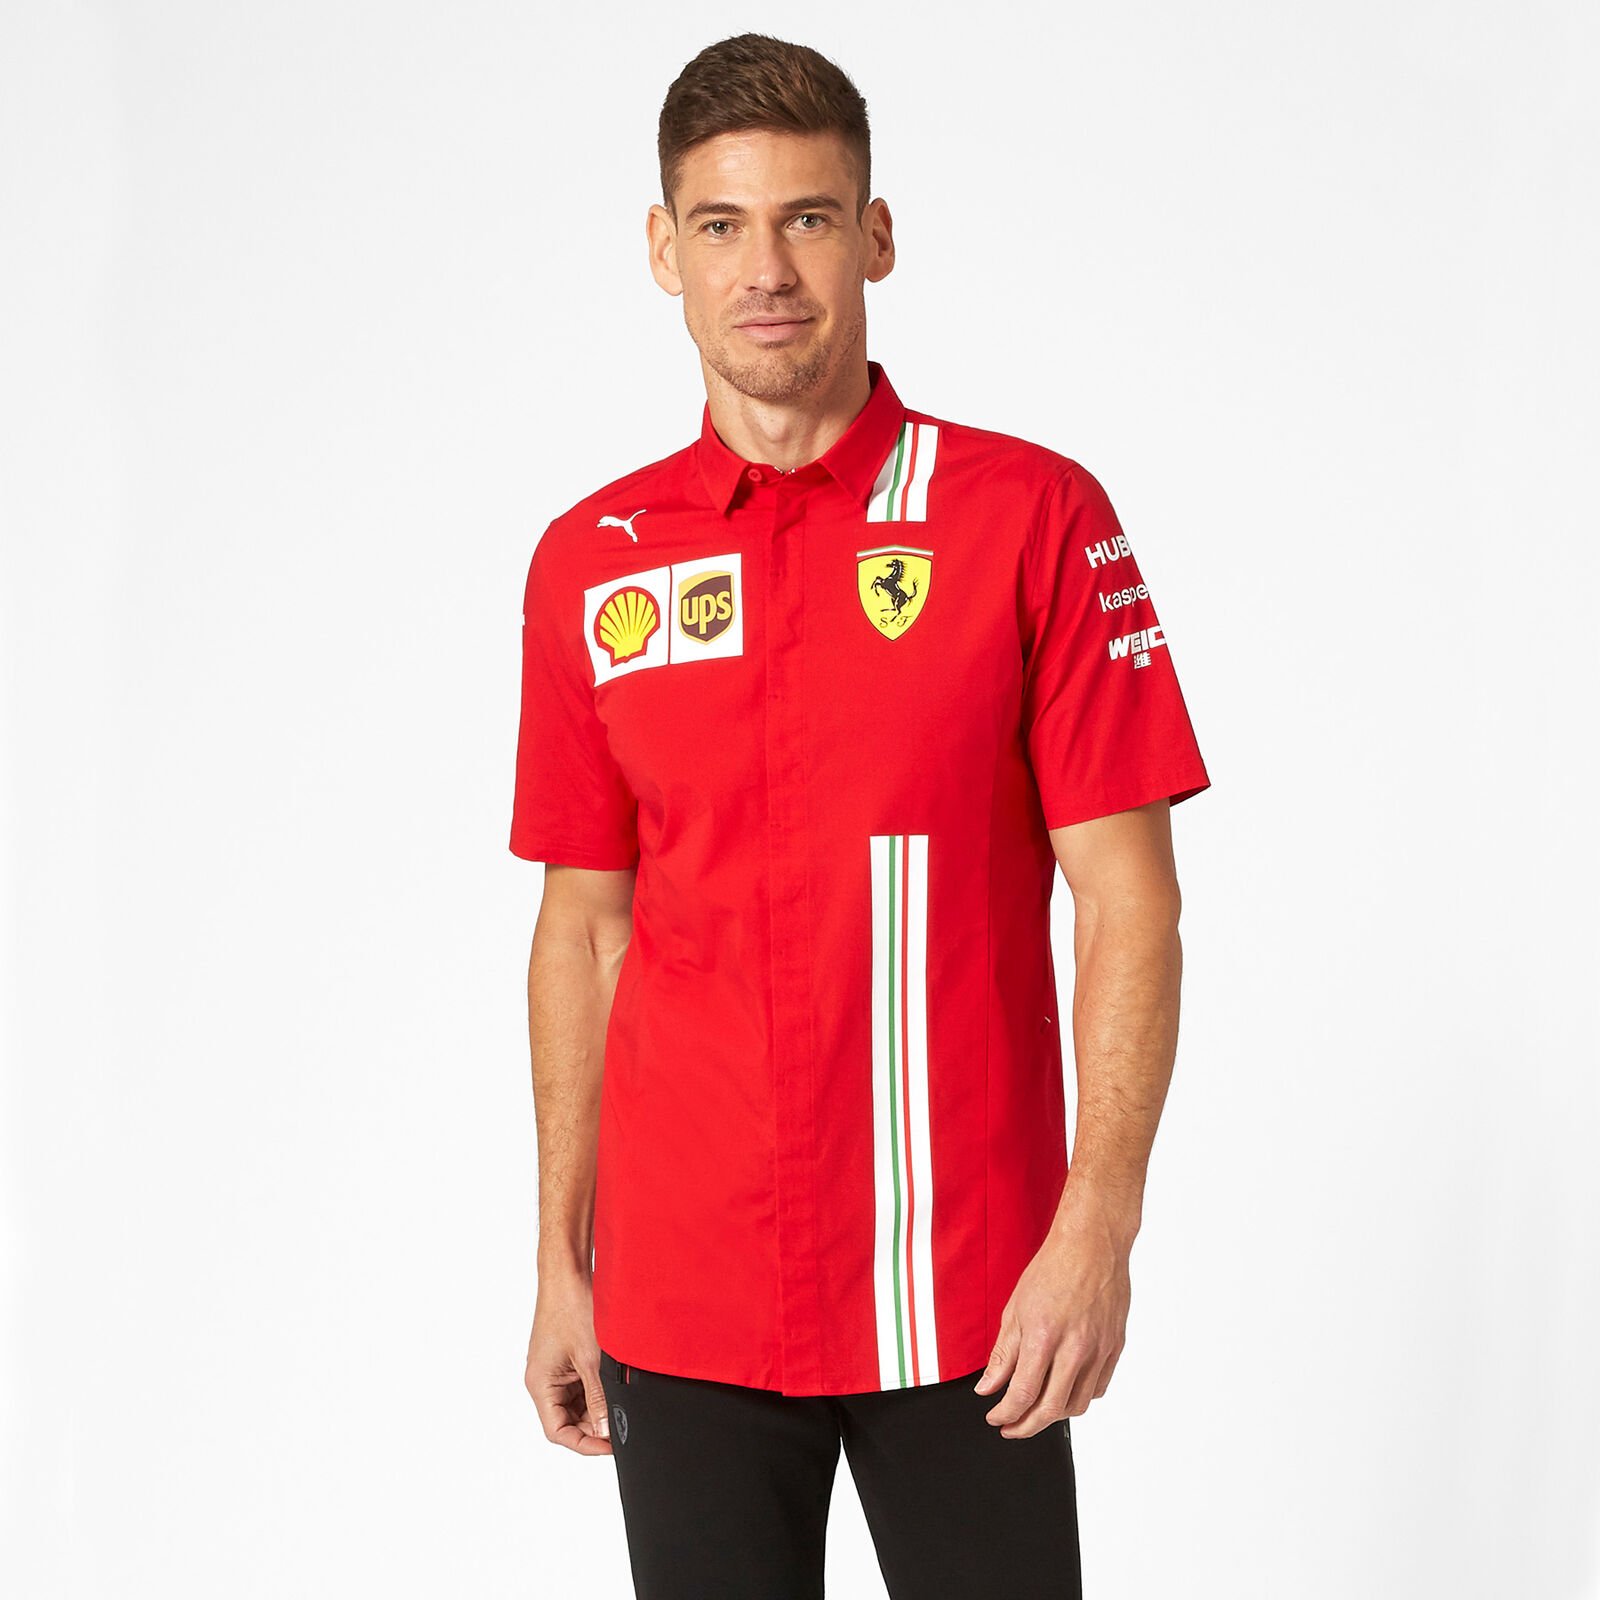 20/21 Camisa del equipo - Scuderia Ferrari For Fans